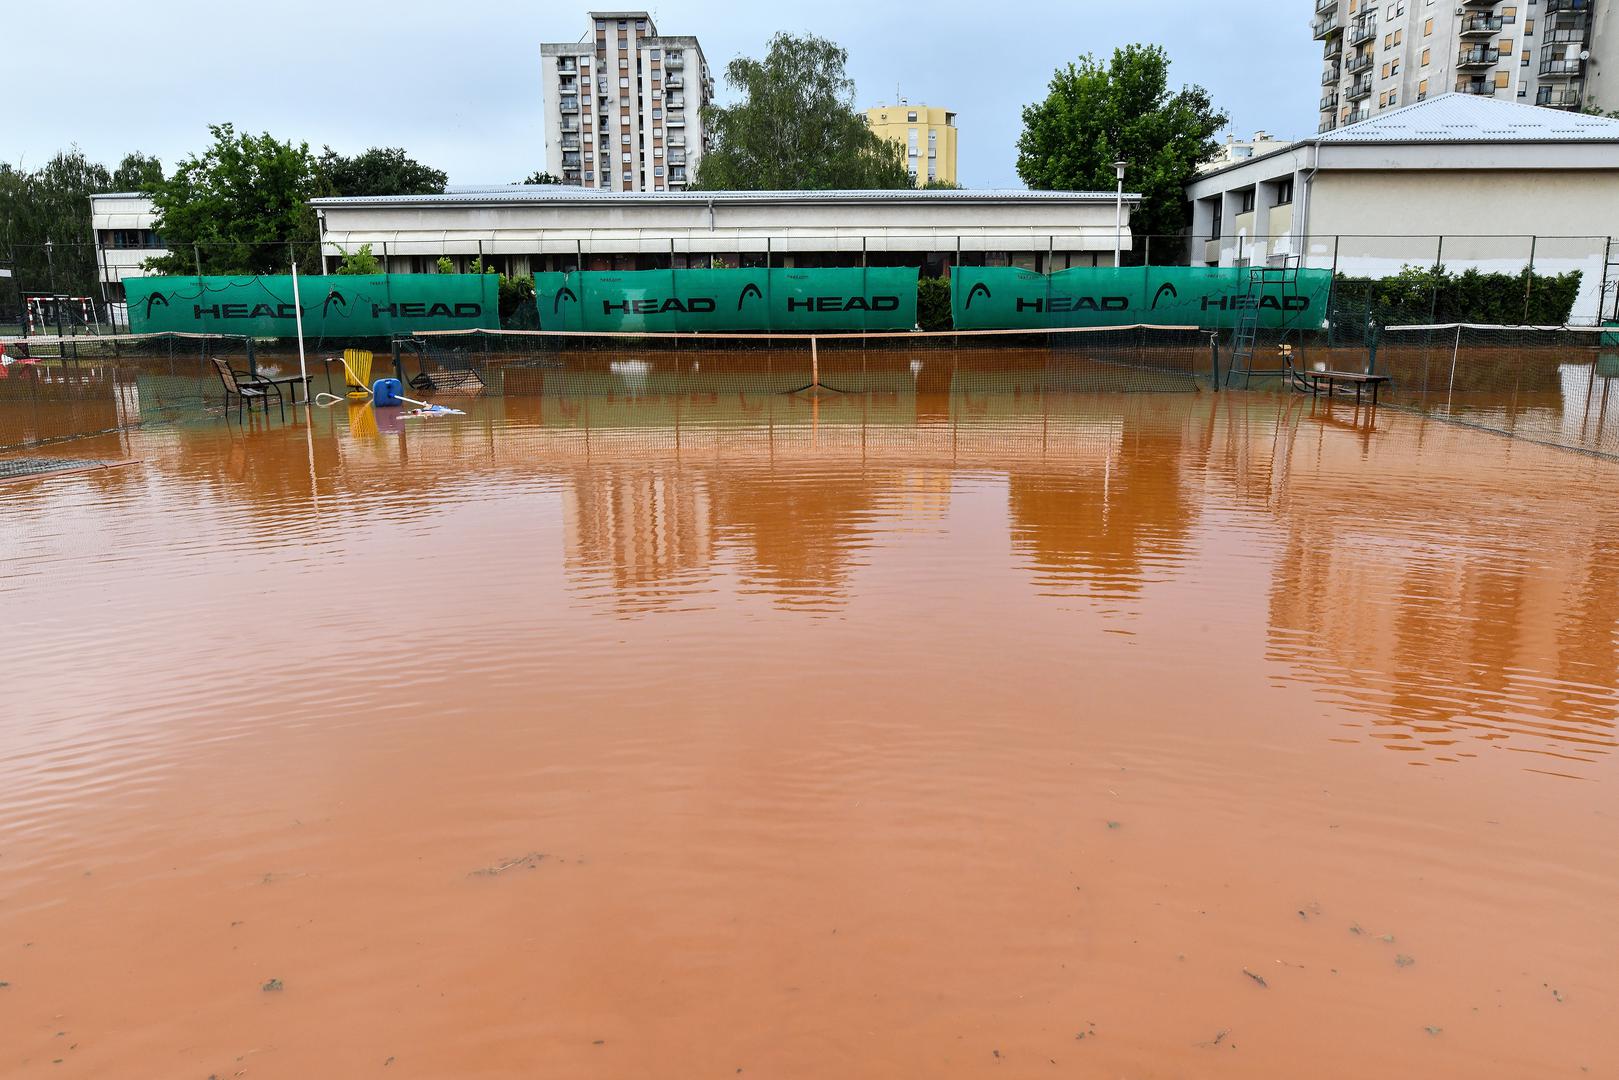 Kiša koja je u utorak i srijedu padala u Zagrebu nije zaobišla ni popularne teniske terene na Ravnicama. 